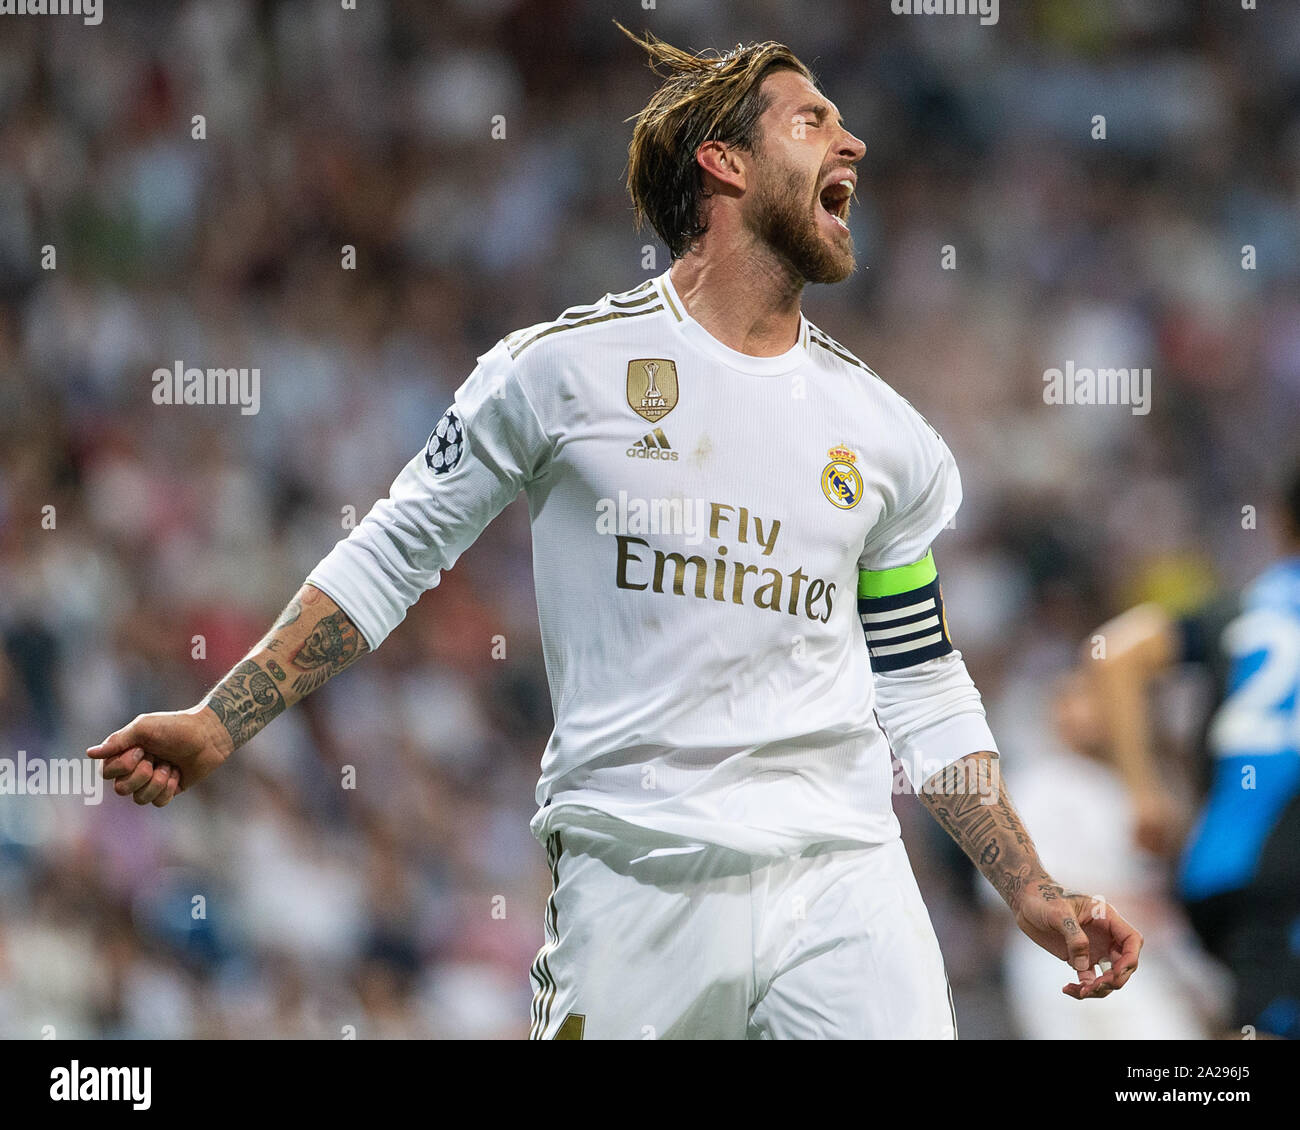 Madrid, España. 01 Oct, 2019. Sergio Ramos del Real Madridduring el partido  Real Madrid CF v Club Brujas , de la Liga de Campeones de la UEFA en 2019/ 2020, temporada, FECHA 2.